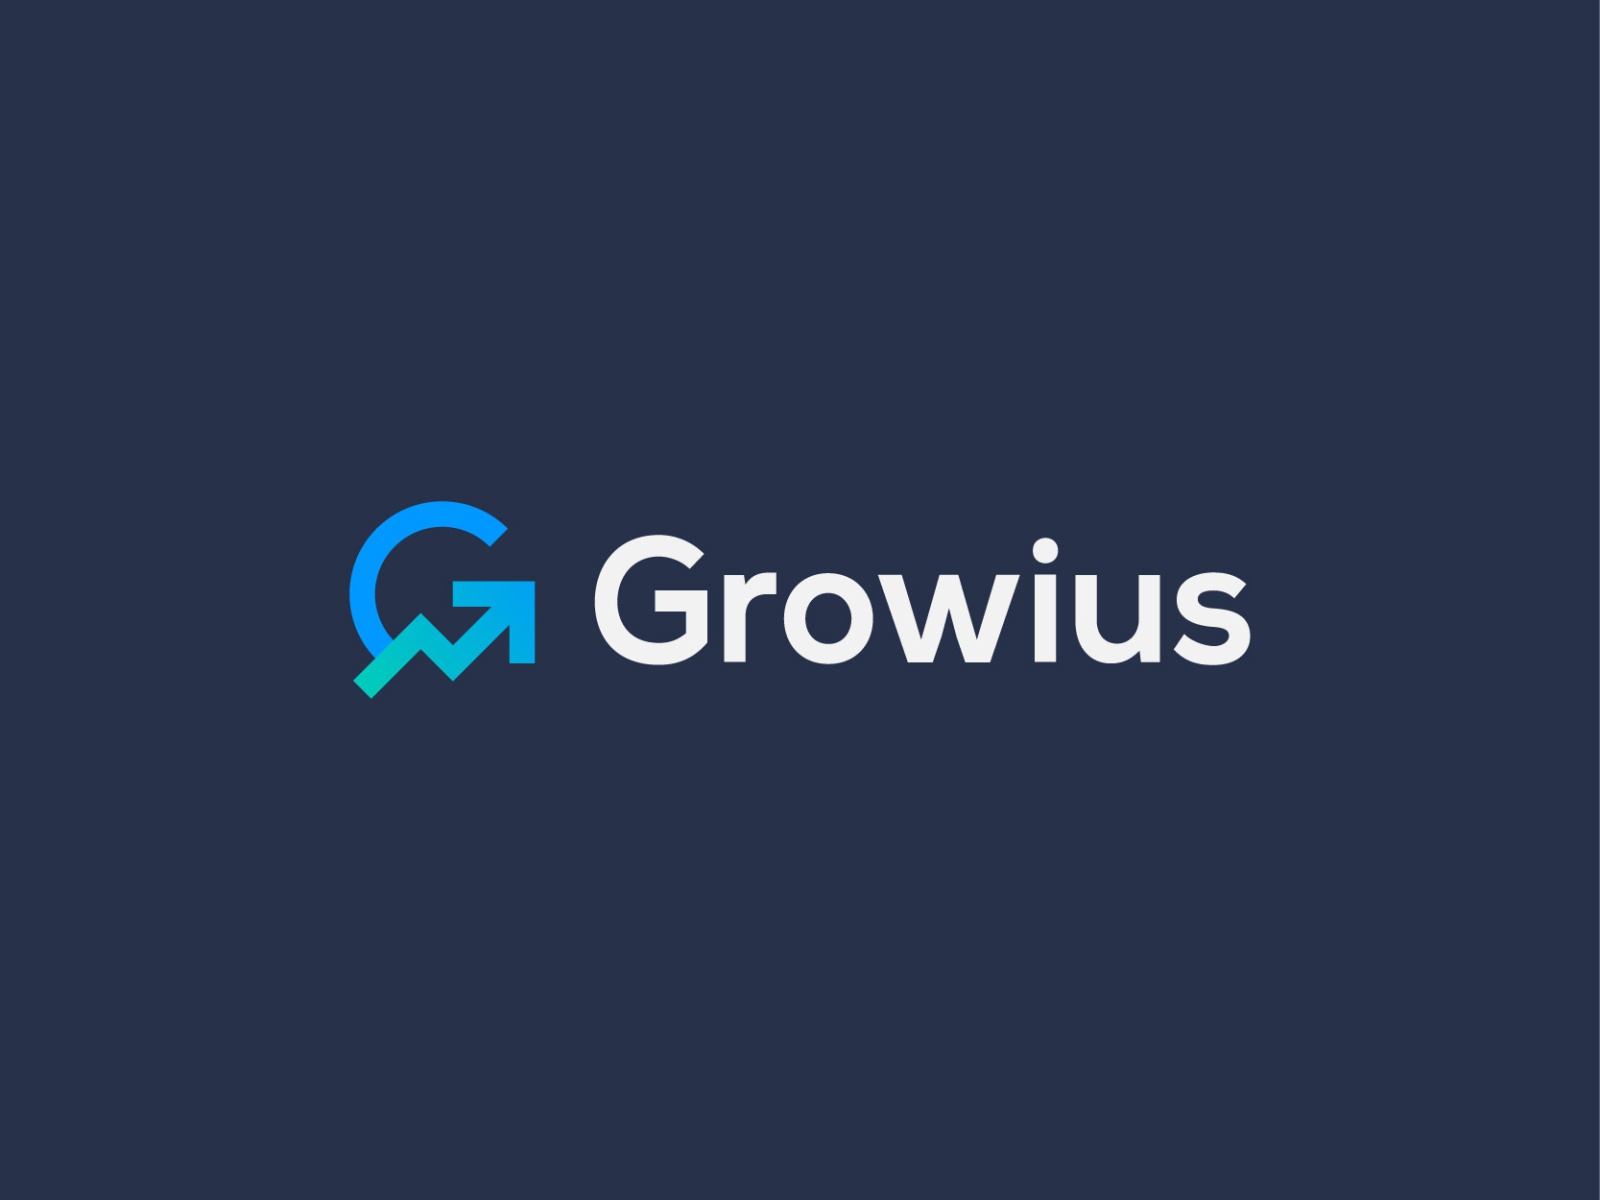 Growius